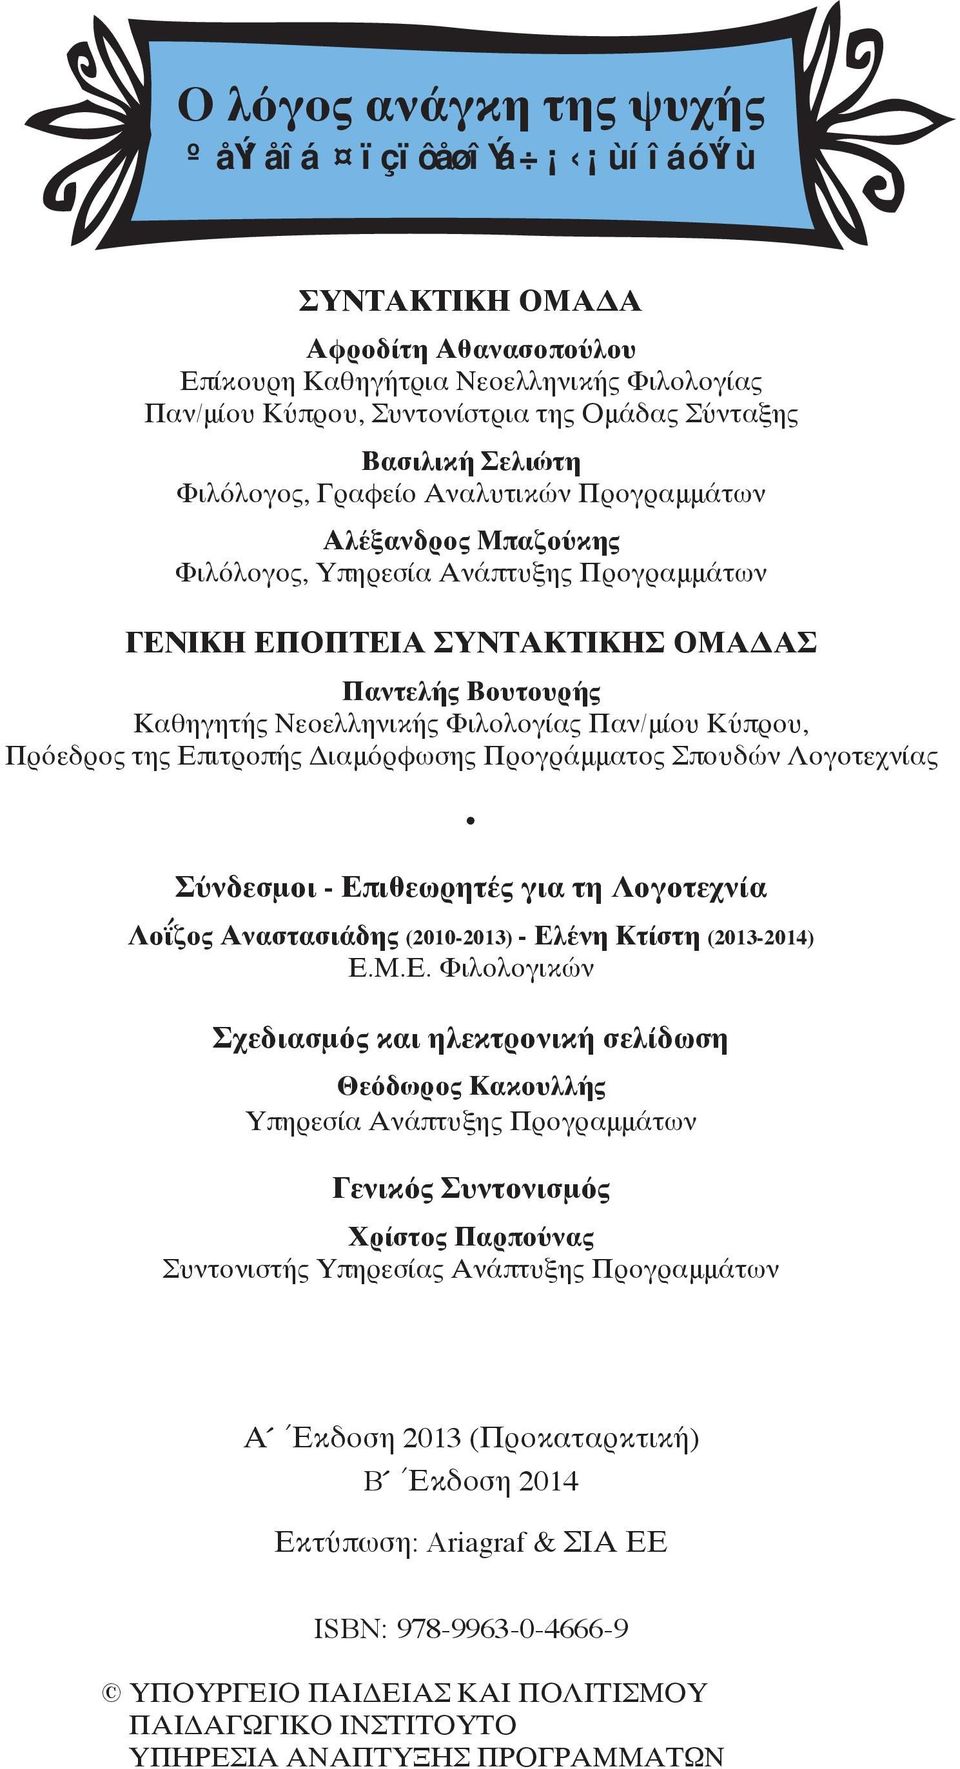 Φιλολογίας Παν/μίου Κύπρου, Πρόεδρος της Επιτροπής Διαμόρφωσης Προγράμματος Σπουδών Λογοτεχνίας Σύνδεσμοι - Επιθεωρητές για τη Λογοτεχνία Λοΐζος Αναστασιάδης (2010-2013) - Ελένη Κτίστη (2013-2014) Ε.